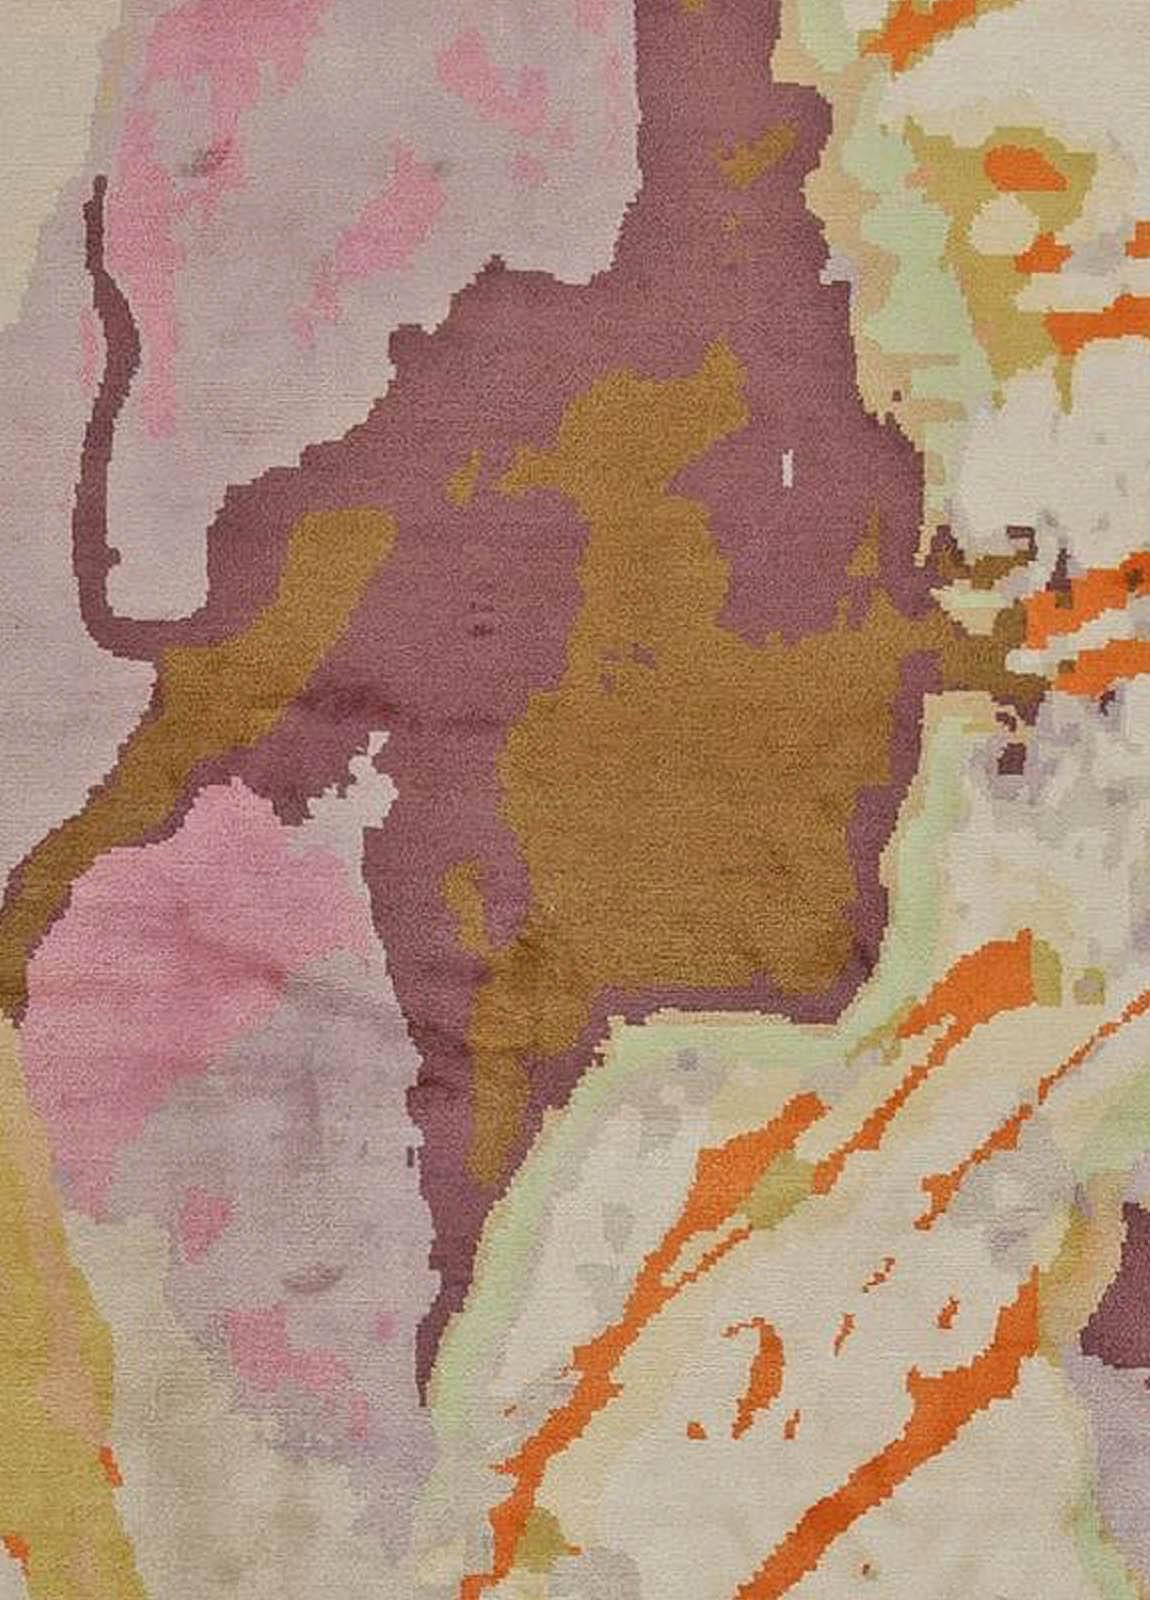 Wool & silk Madagascar modern abstract rug by Eskayel for Doris Leslie Blau
Size: 12'0